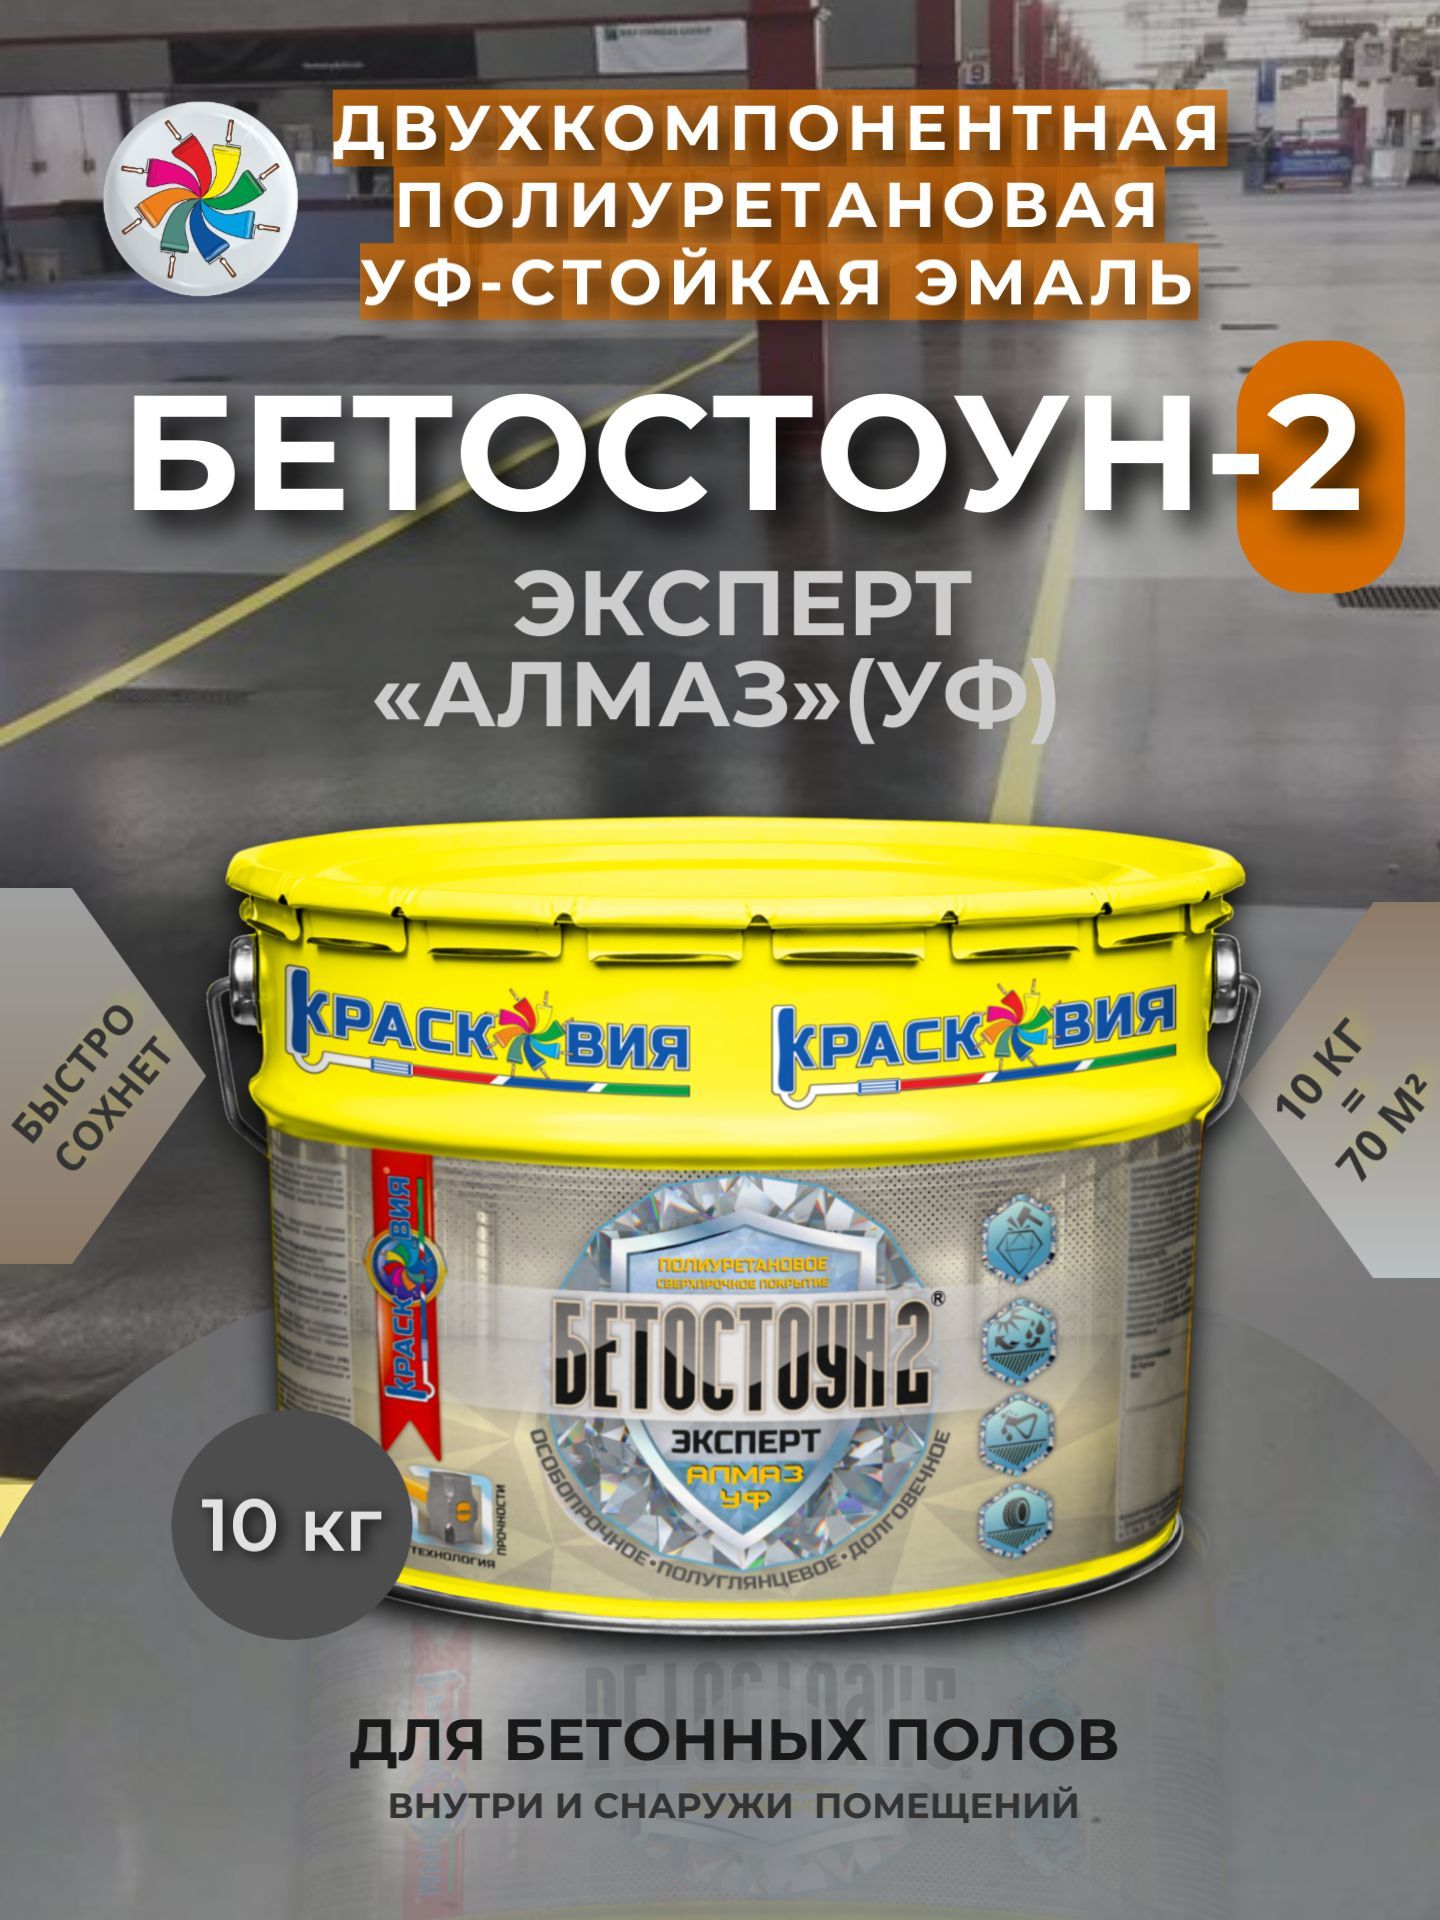 ПолиуретановаяэмальдлябетонныхполовУФ-стойкая,Бетостоун-2ЭкспертАлмазУФ,RAL7040,10кг.